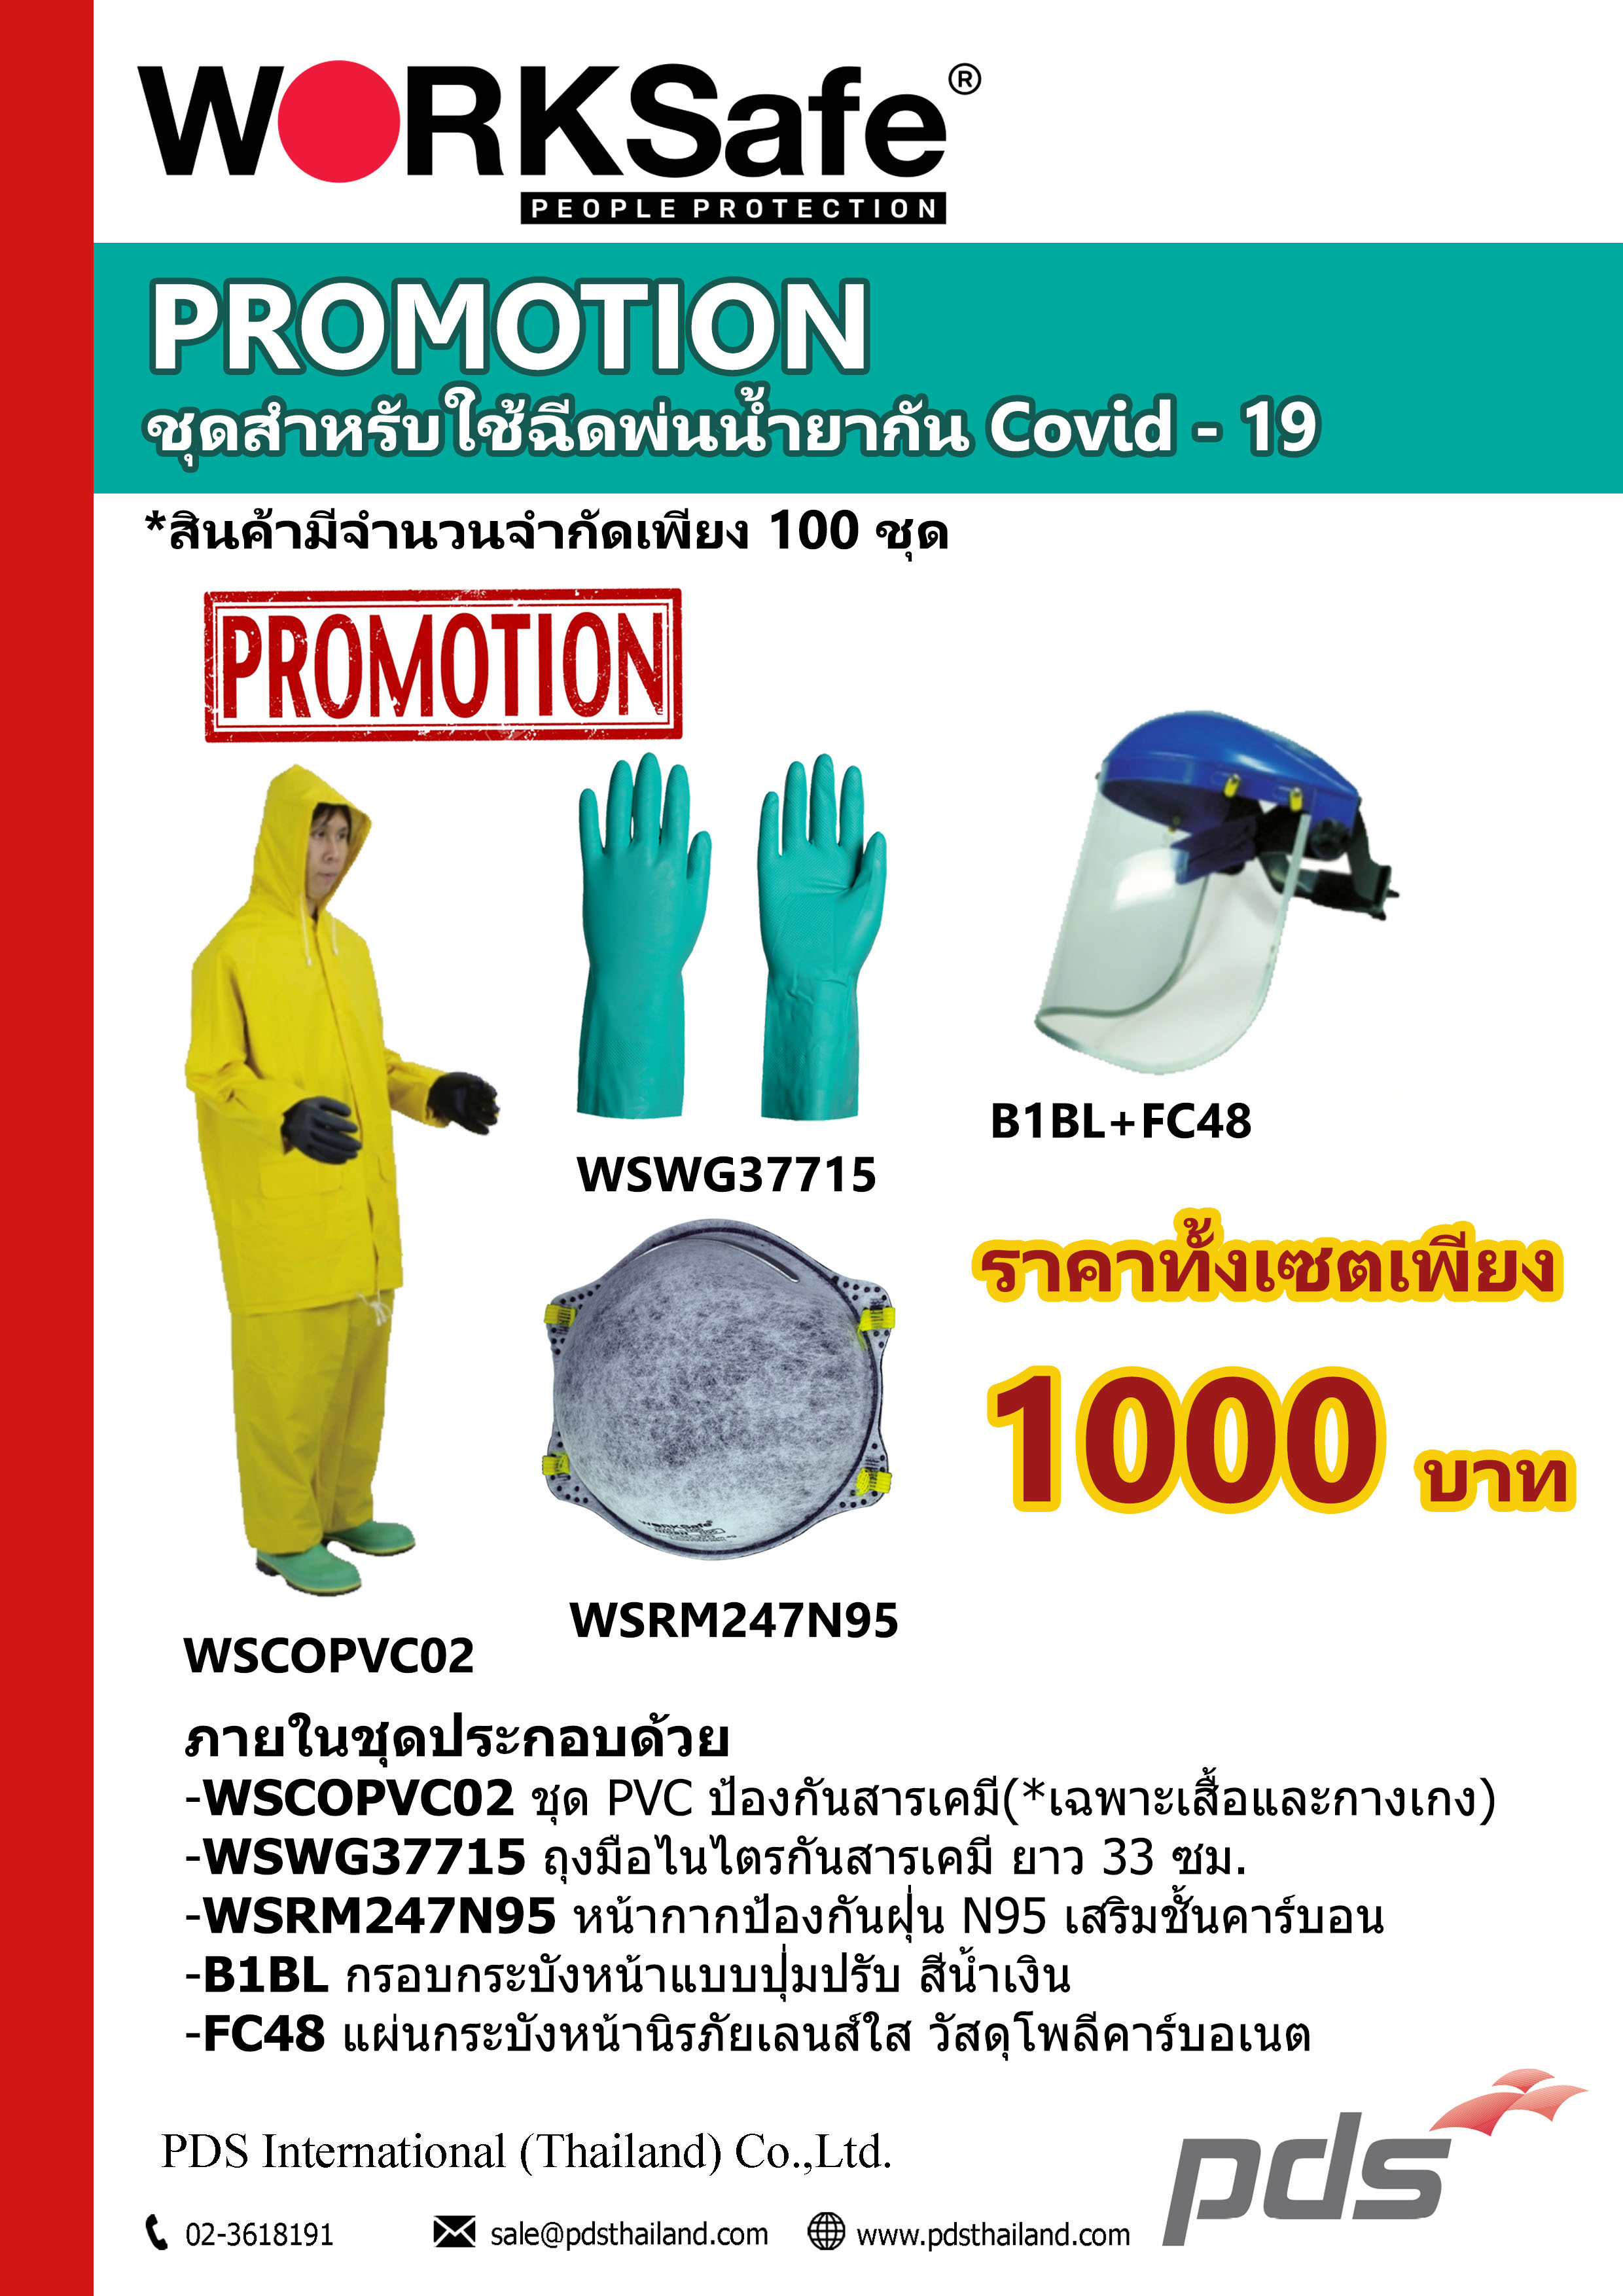 โปรโมชั่นชุดสำหรับใช้ฉีดพ่นน้ำยากัน COVID-19